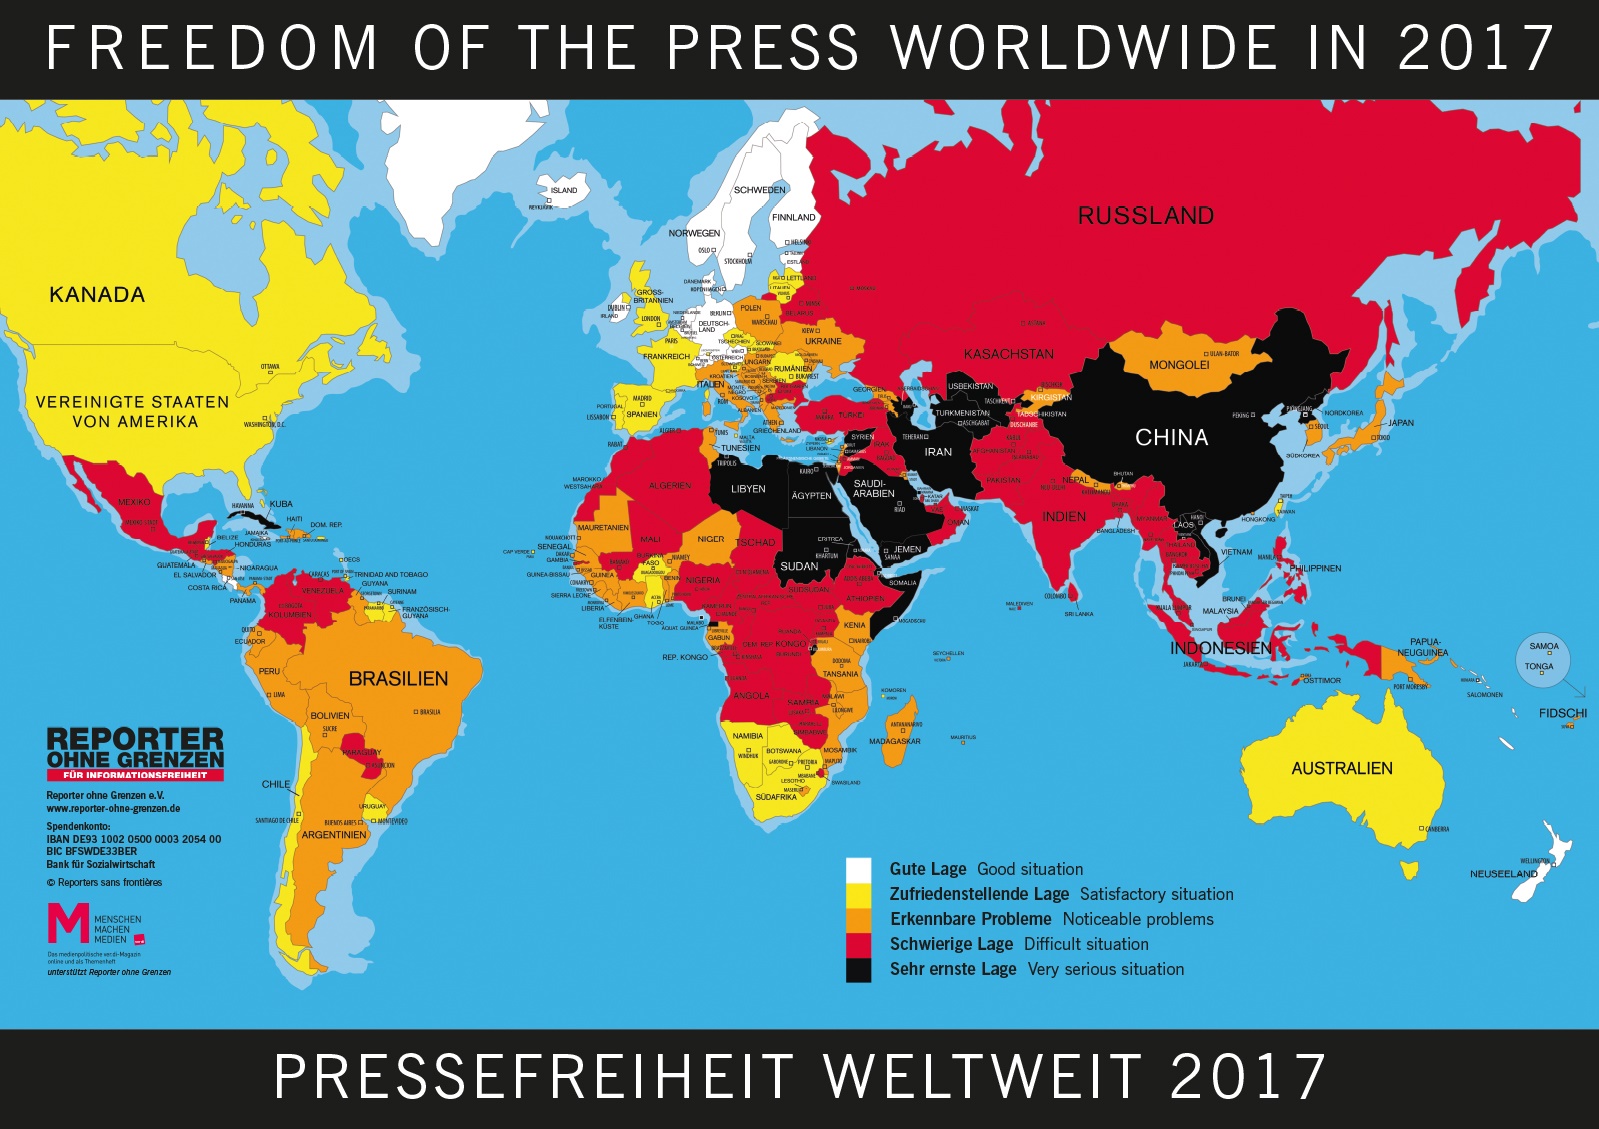 Medienfreiheit auch in Demokratien bedroht – M – Menschen Machen Medien